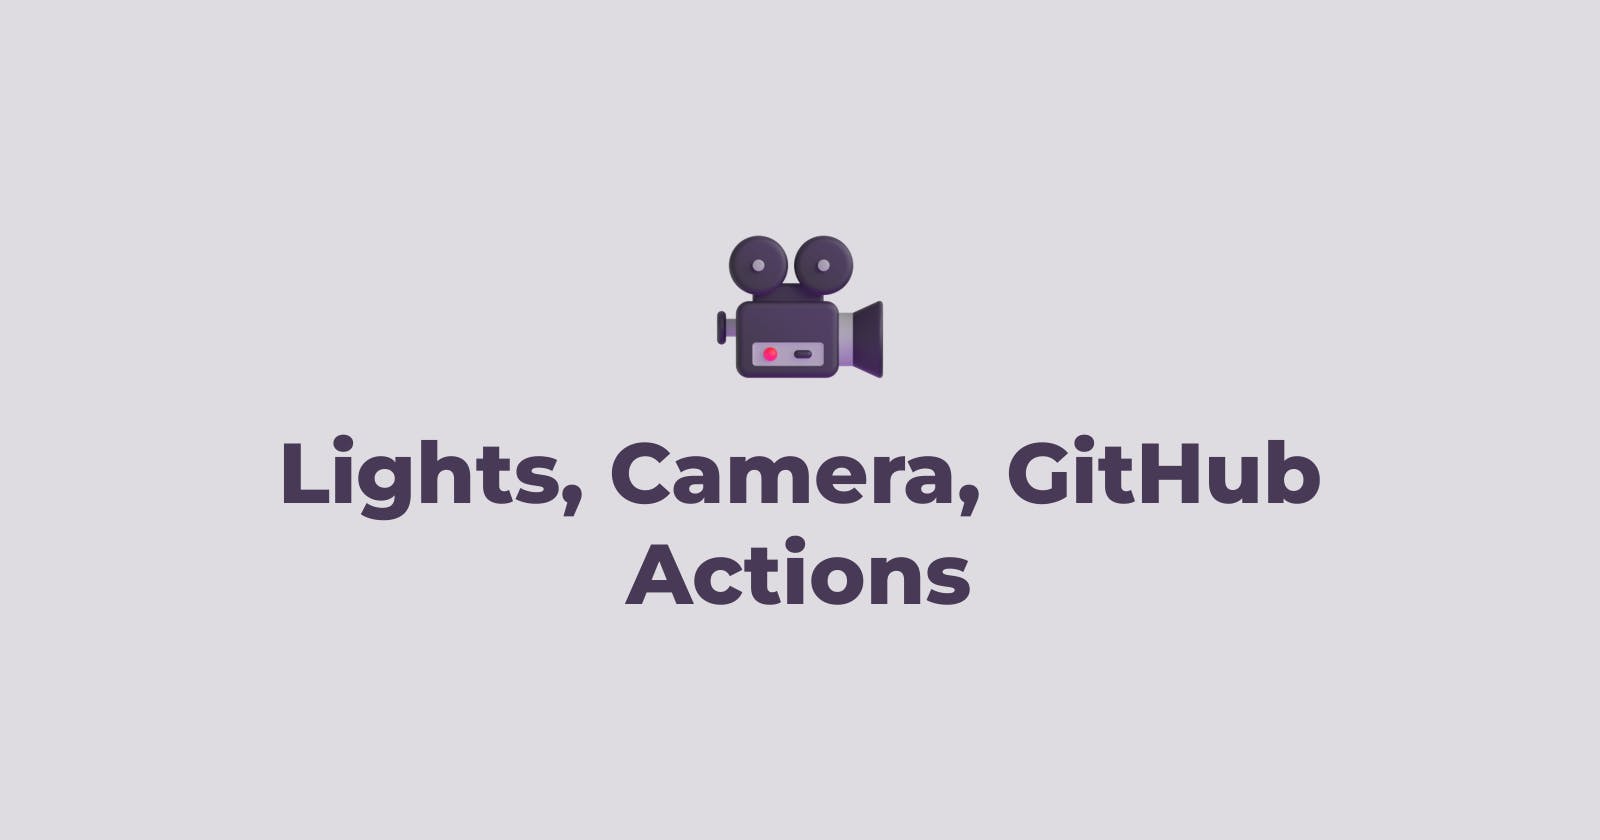 Lights, Camera, GitHub Actions